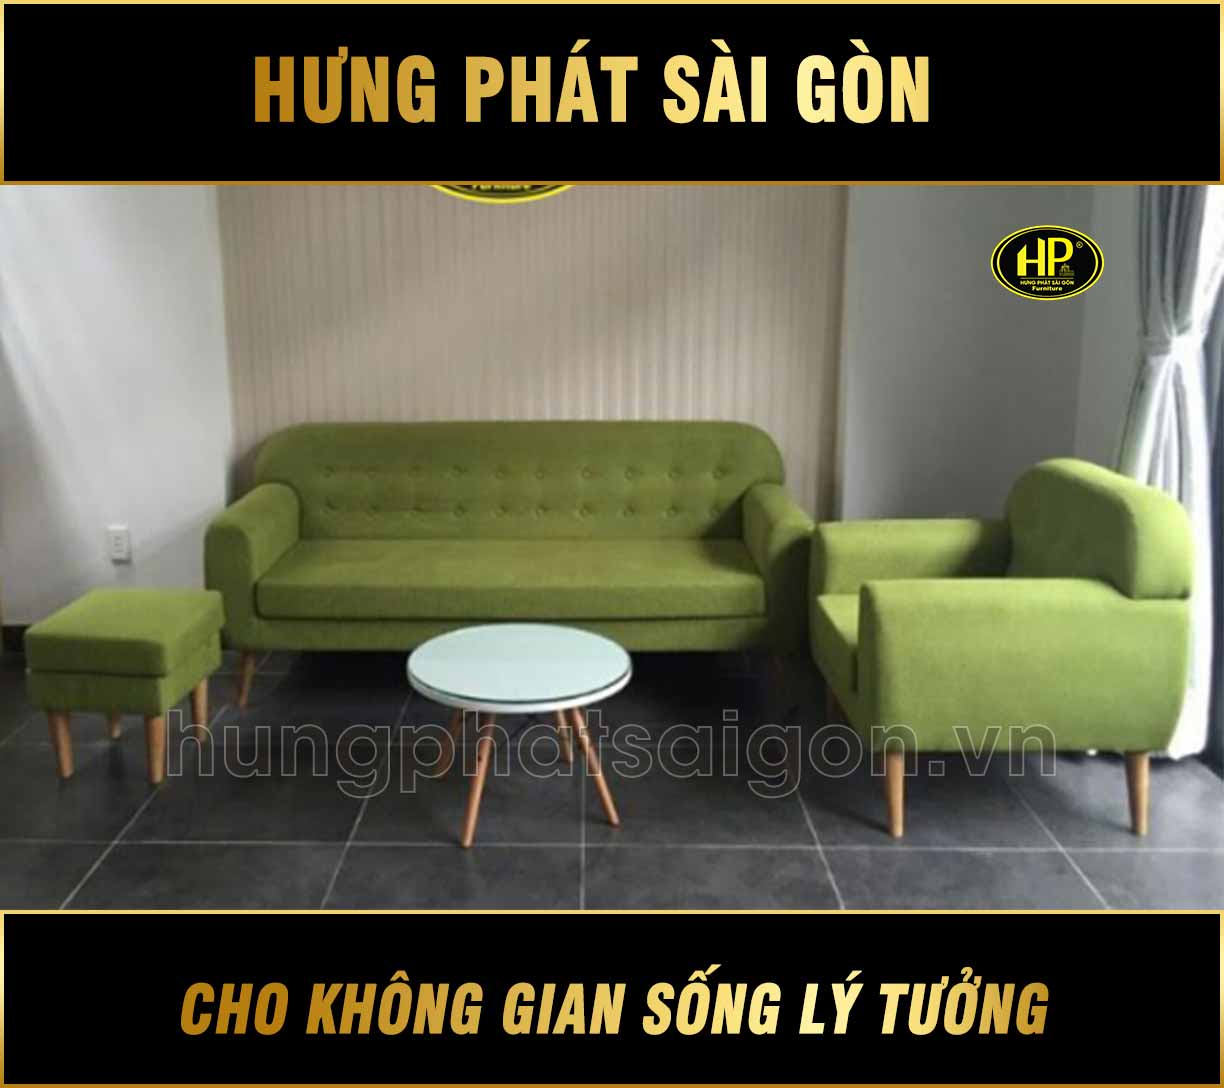 Sofa màu xanh lá cây Hưng Phát Sài Gòn được cam kết về chất lượng 